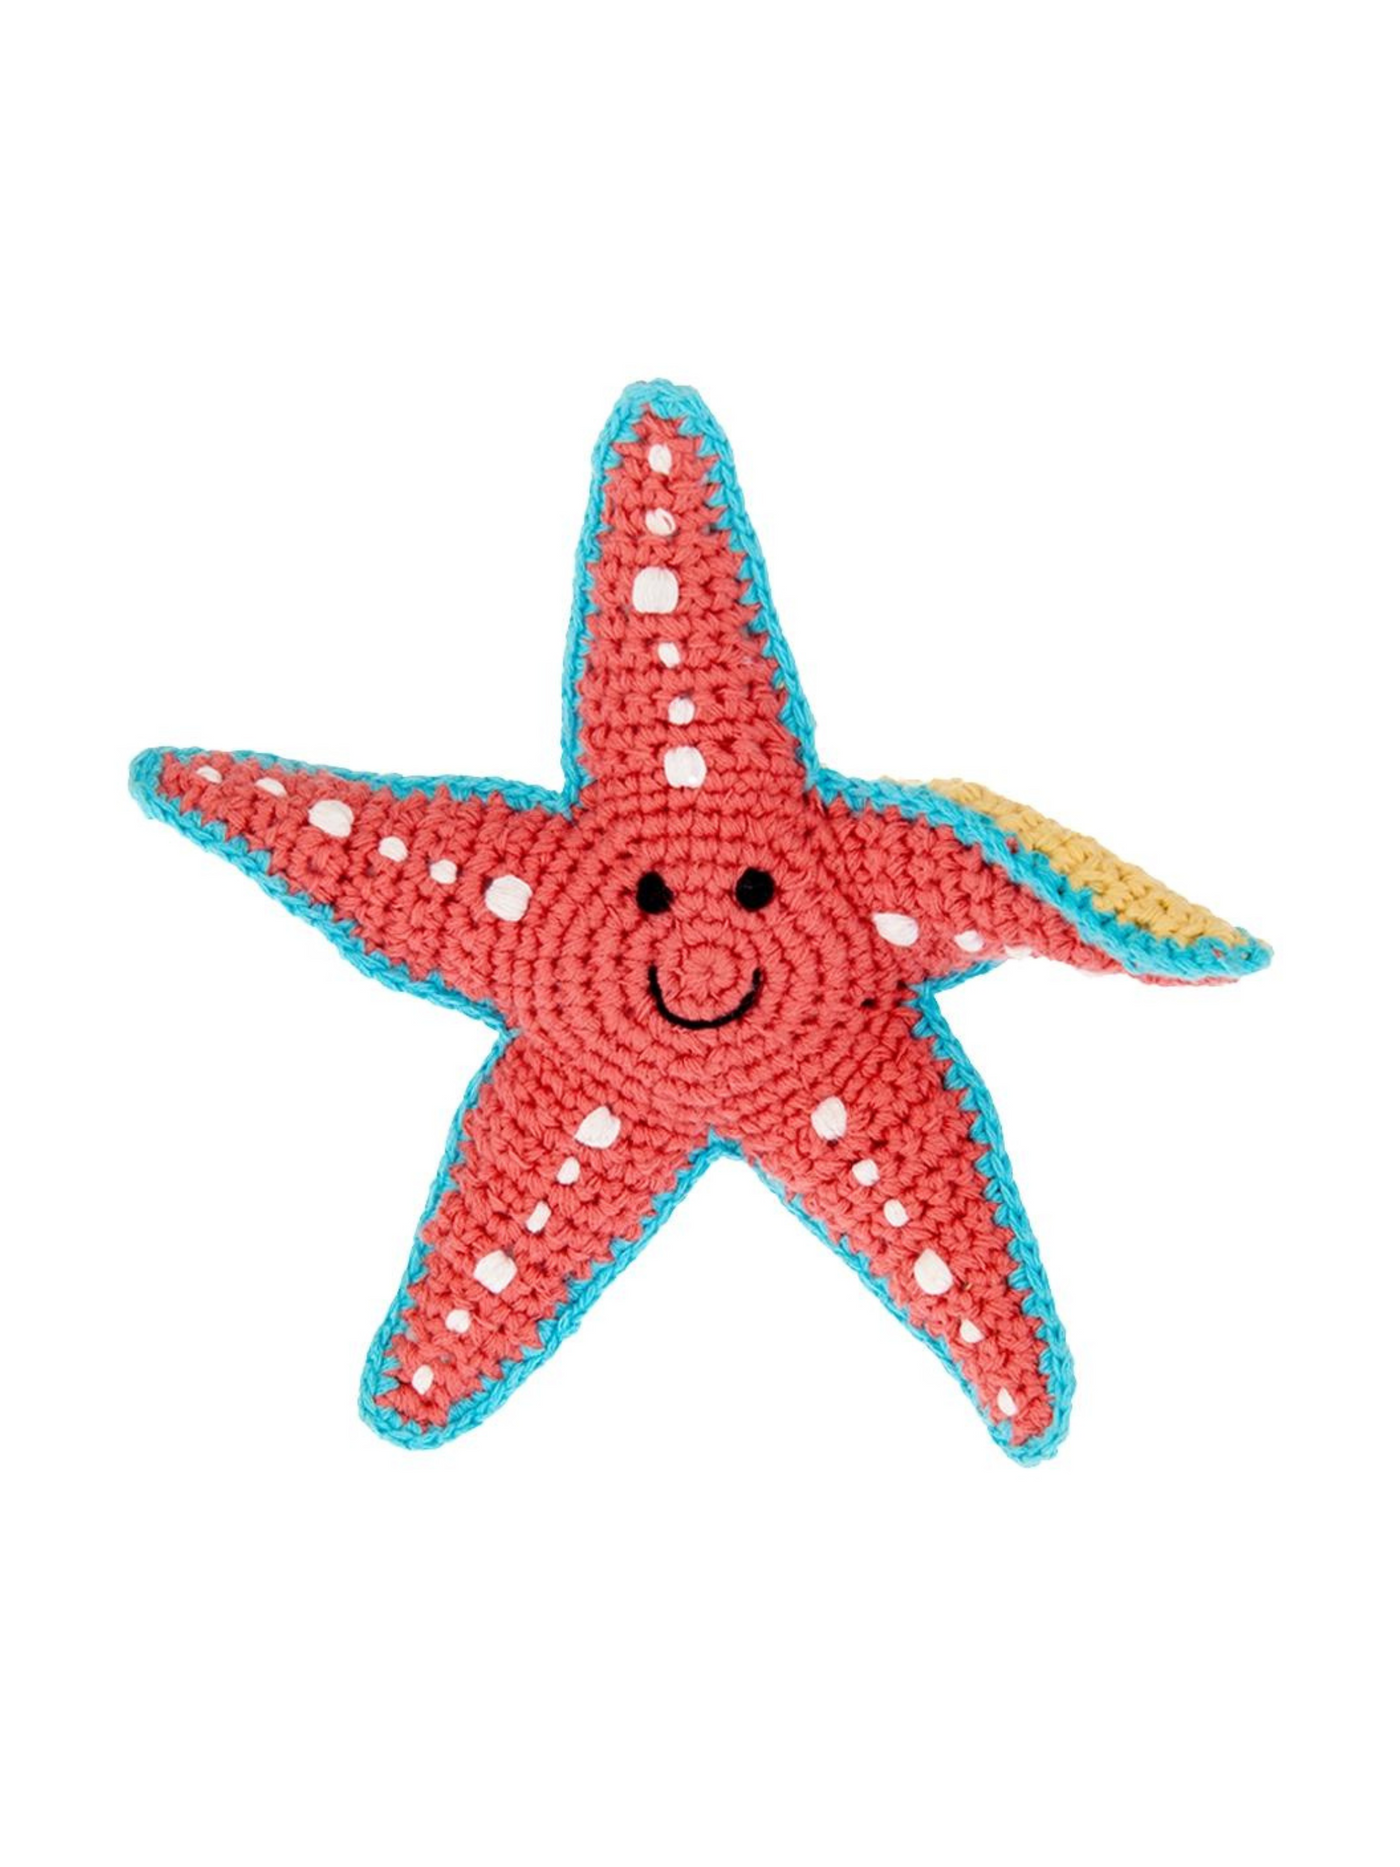 Plush Starfish Toy